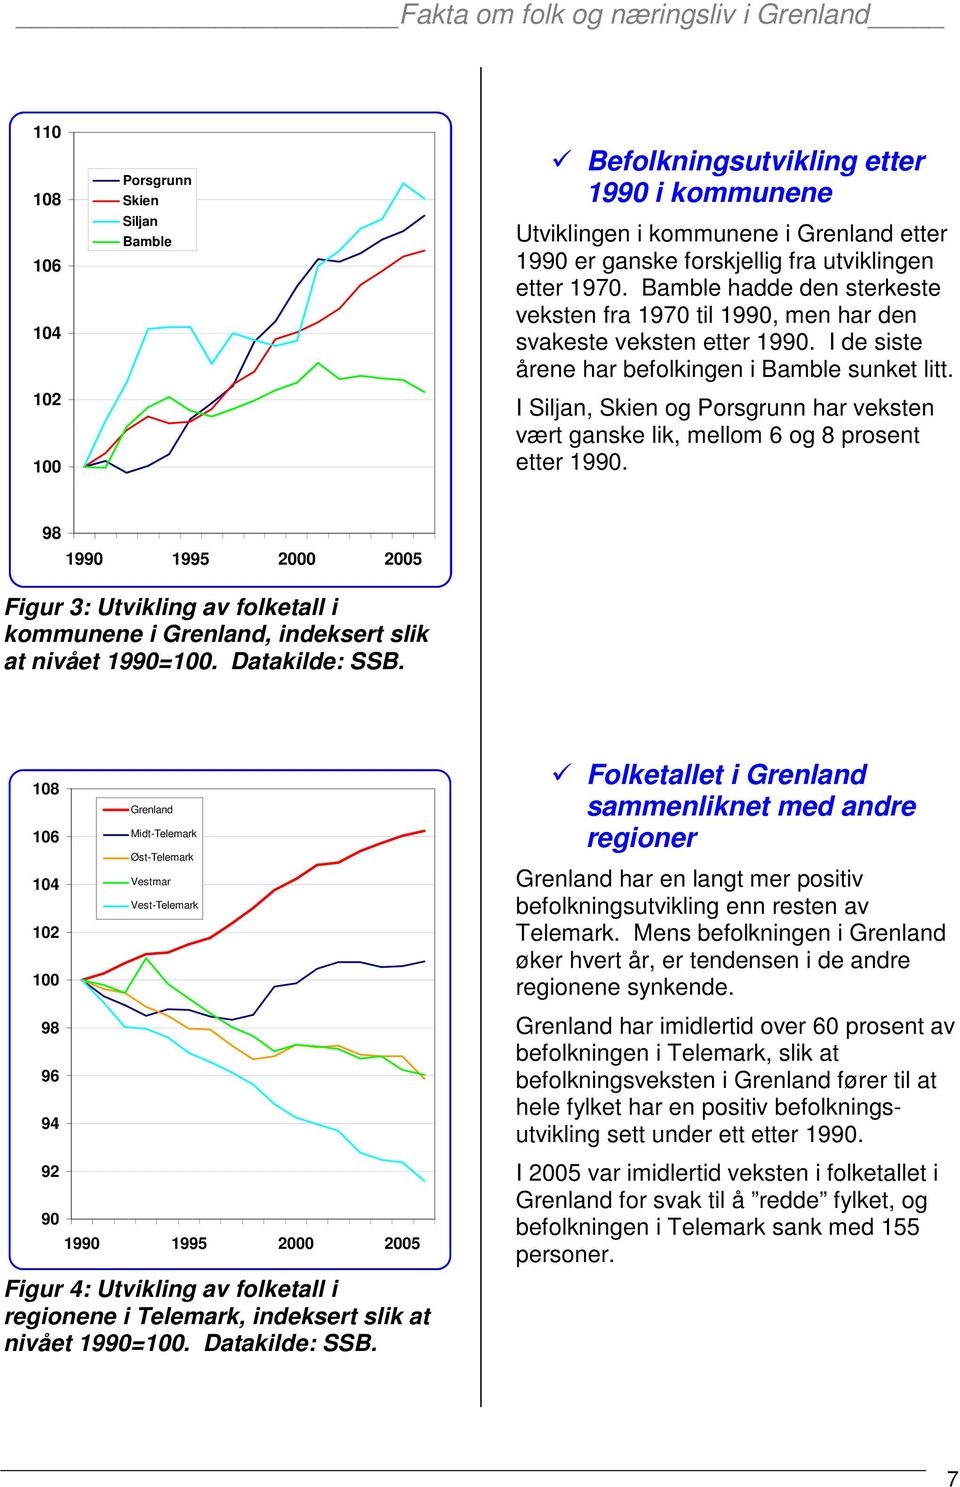 I Siljan, Skien og Porsgrunn har veksten vært ganske lik, mellom 6 og 8 prosent etter 1990.